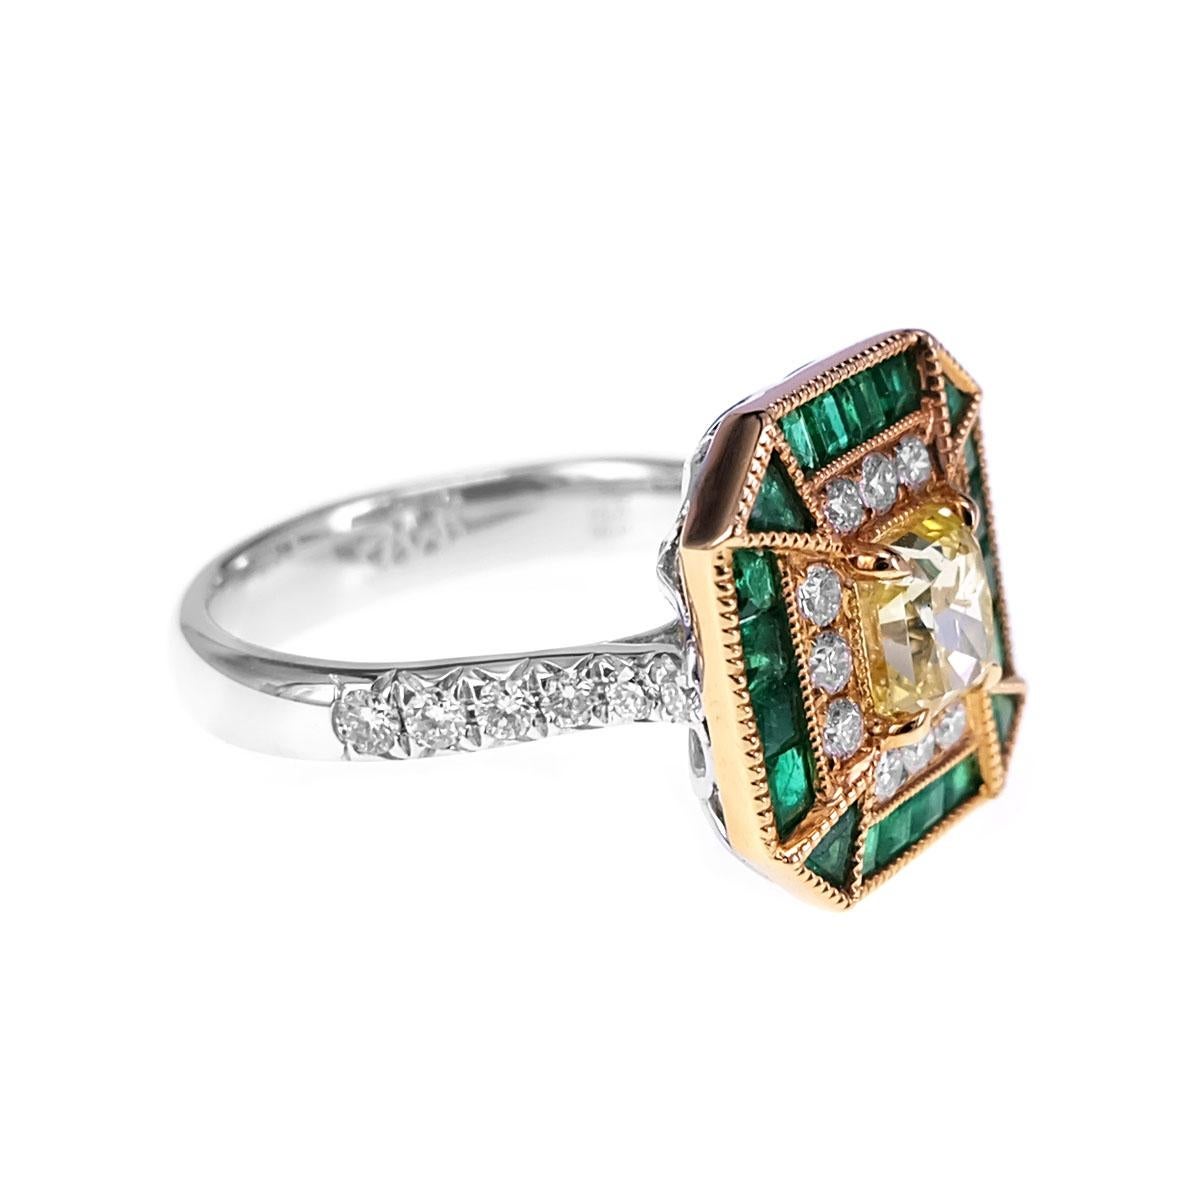 Ein GIA-zertifizierter 1,03-karätiger Fancy Intense Yellow-Diamant ist zusammen mit einem 0,71-karätigen Vivid Green Emerald und einem 0,41-karätigen weißen runden Brillanten gefasst. Die Einzelheiten des Rings sind nachstehend aufgeführt:
Farbe: